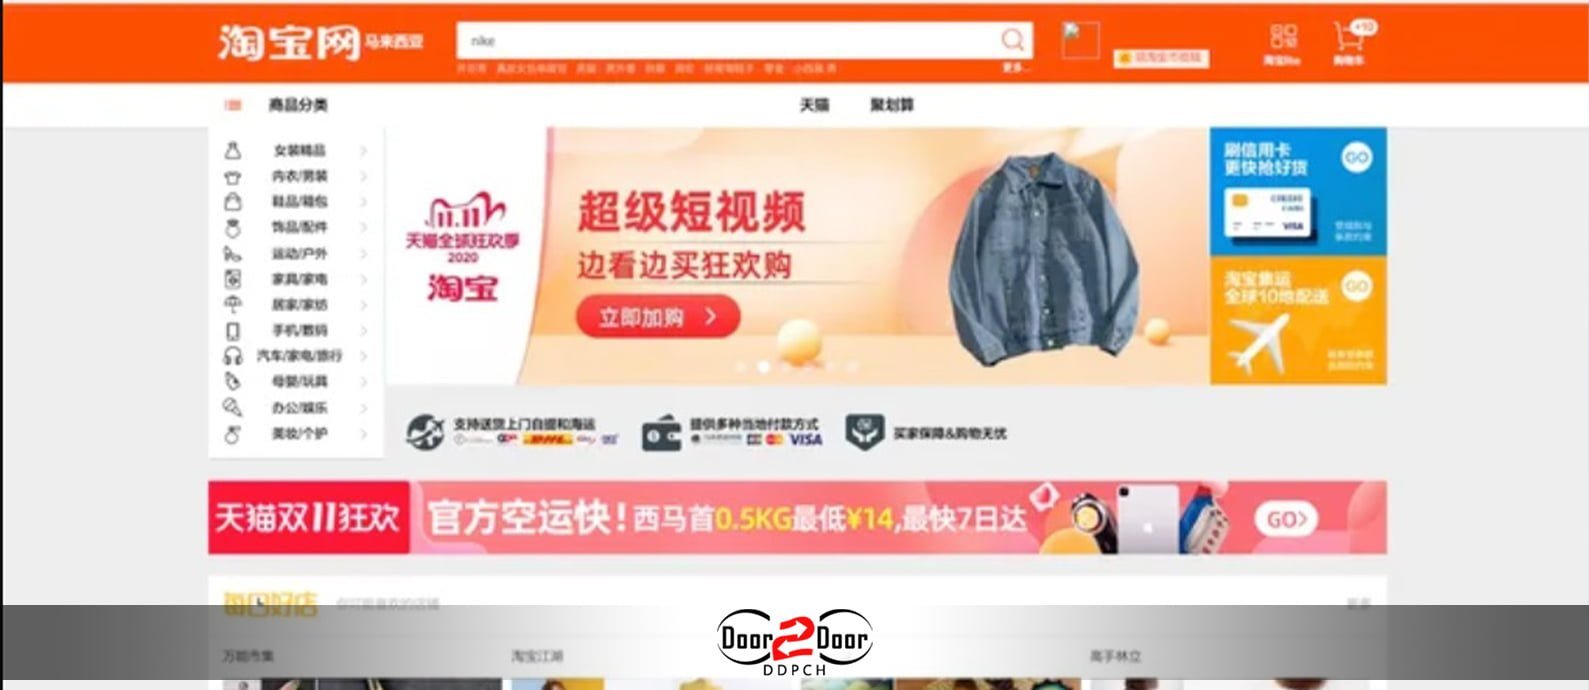 taobao website